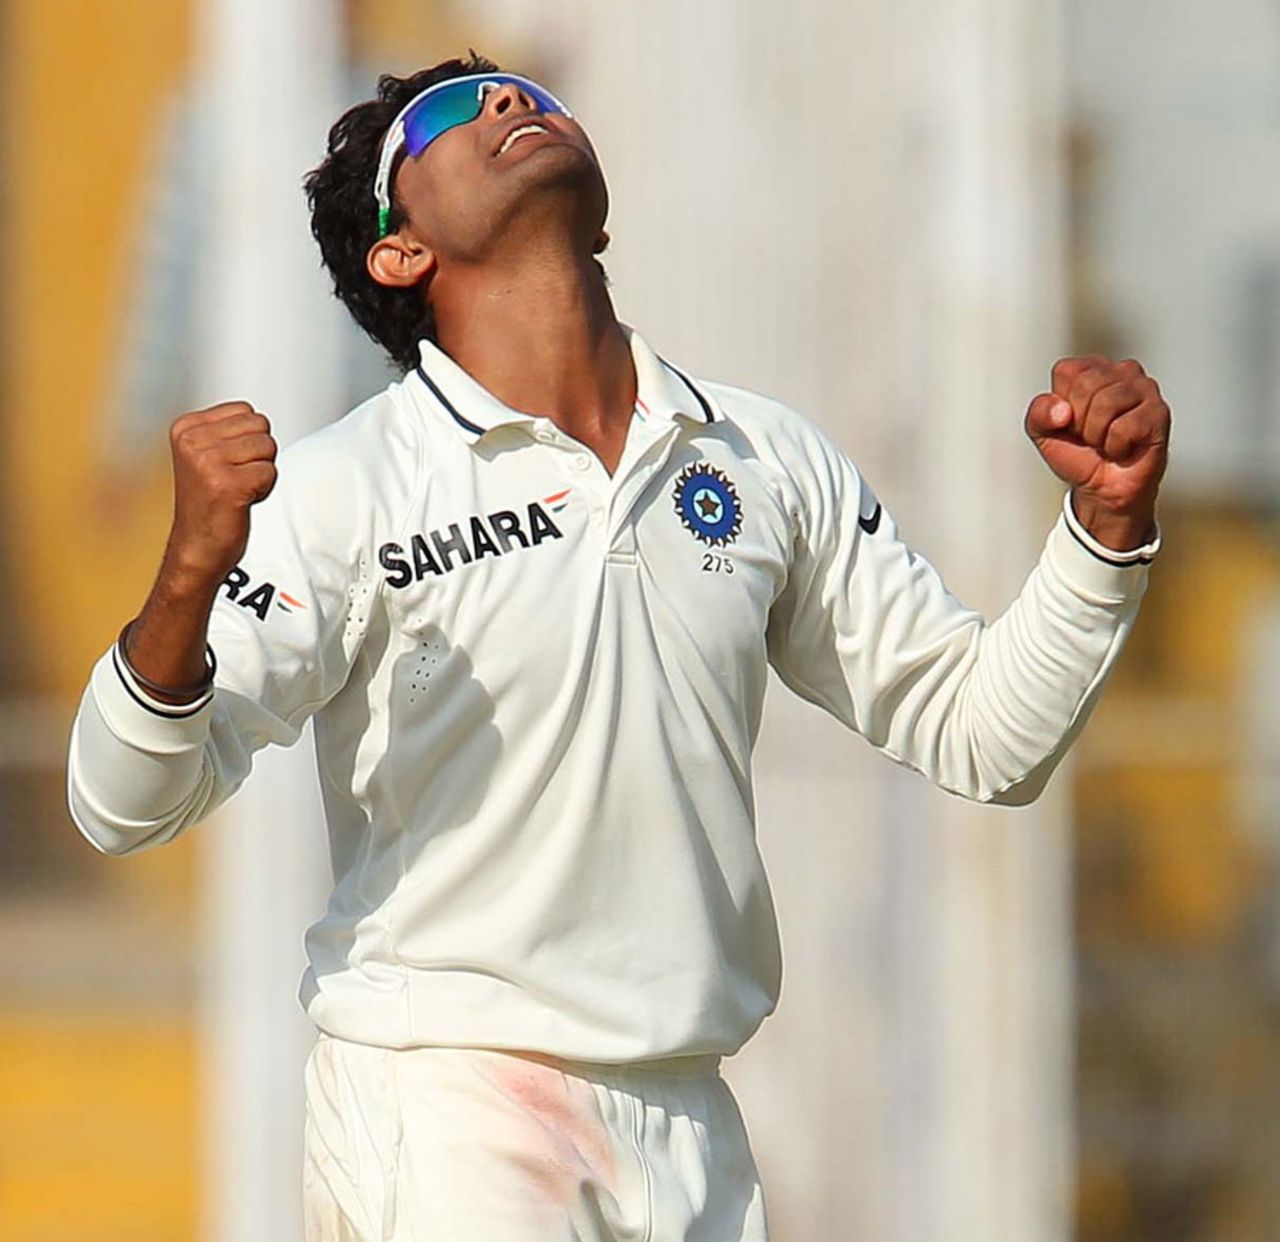 Ravindra Jadeja celebrates after dismissing Peter Siddle, India v Australia, 3rd Test, Mohali, 2nd day, March 15, 2013